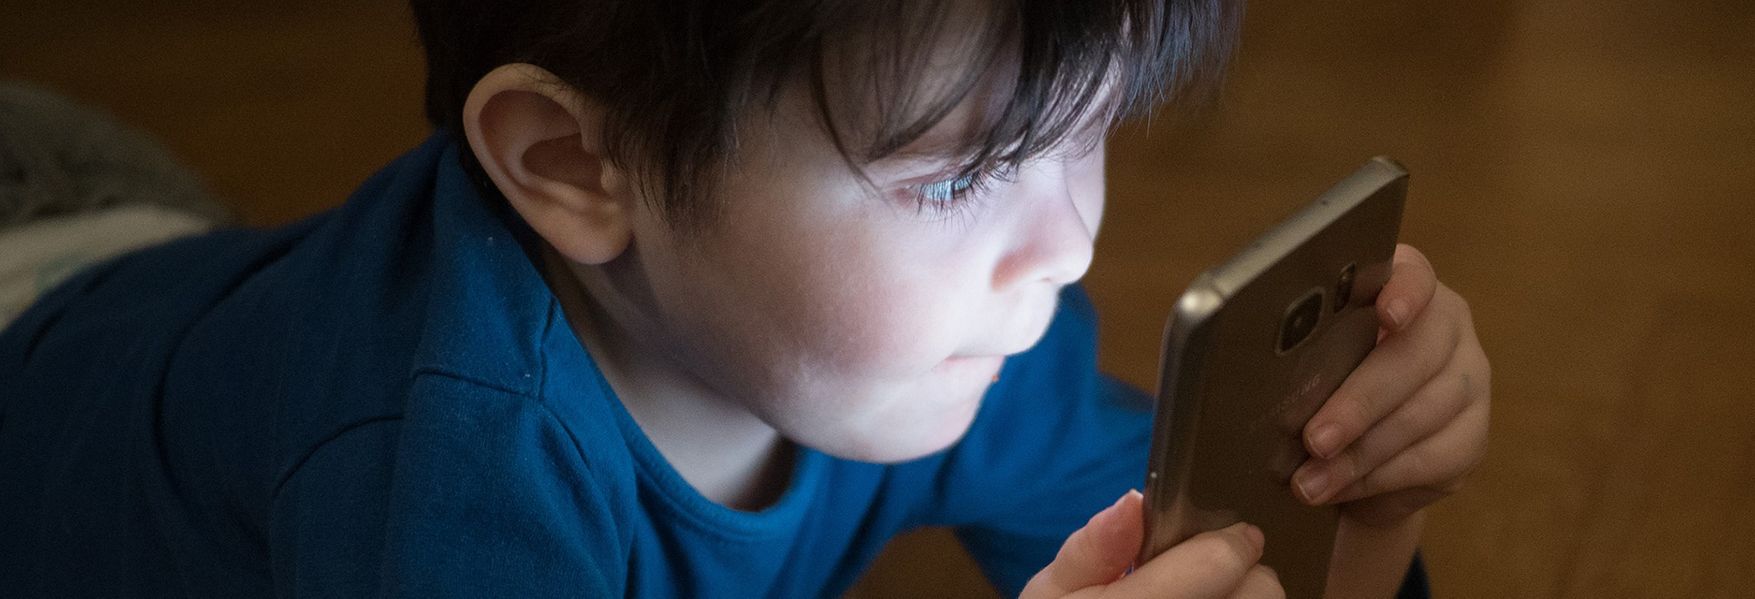 Niños invierten hasta cinco horas al día en dispositivos móviles